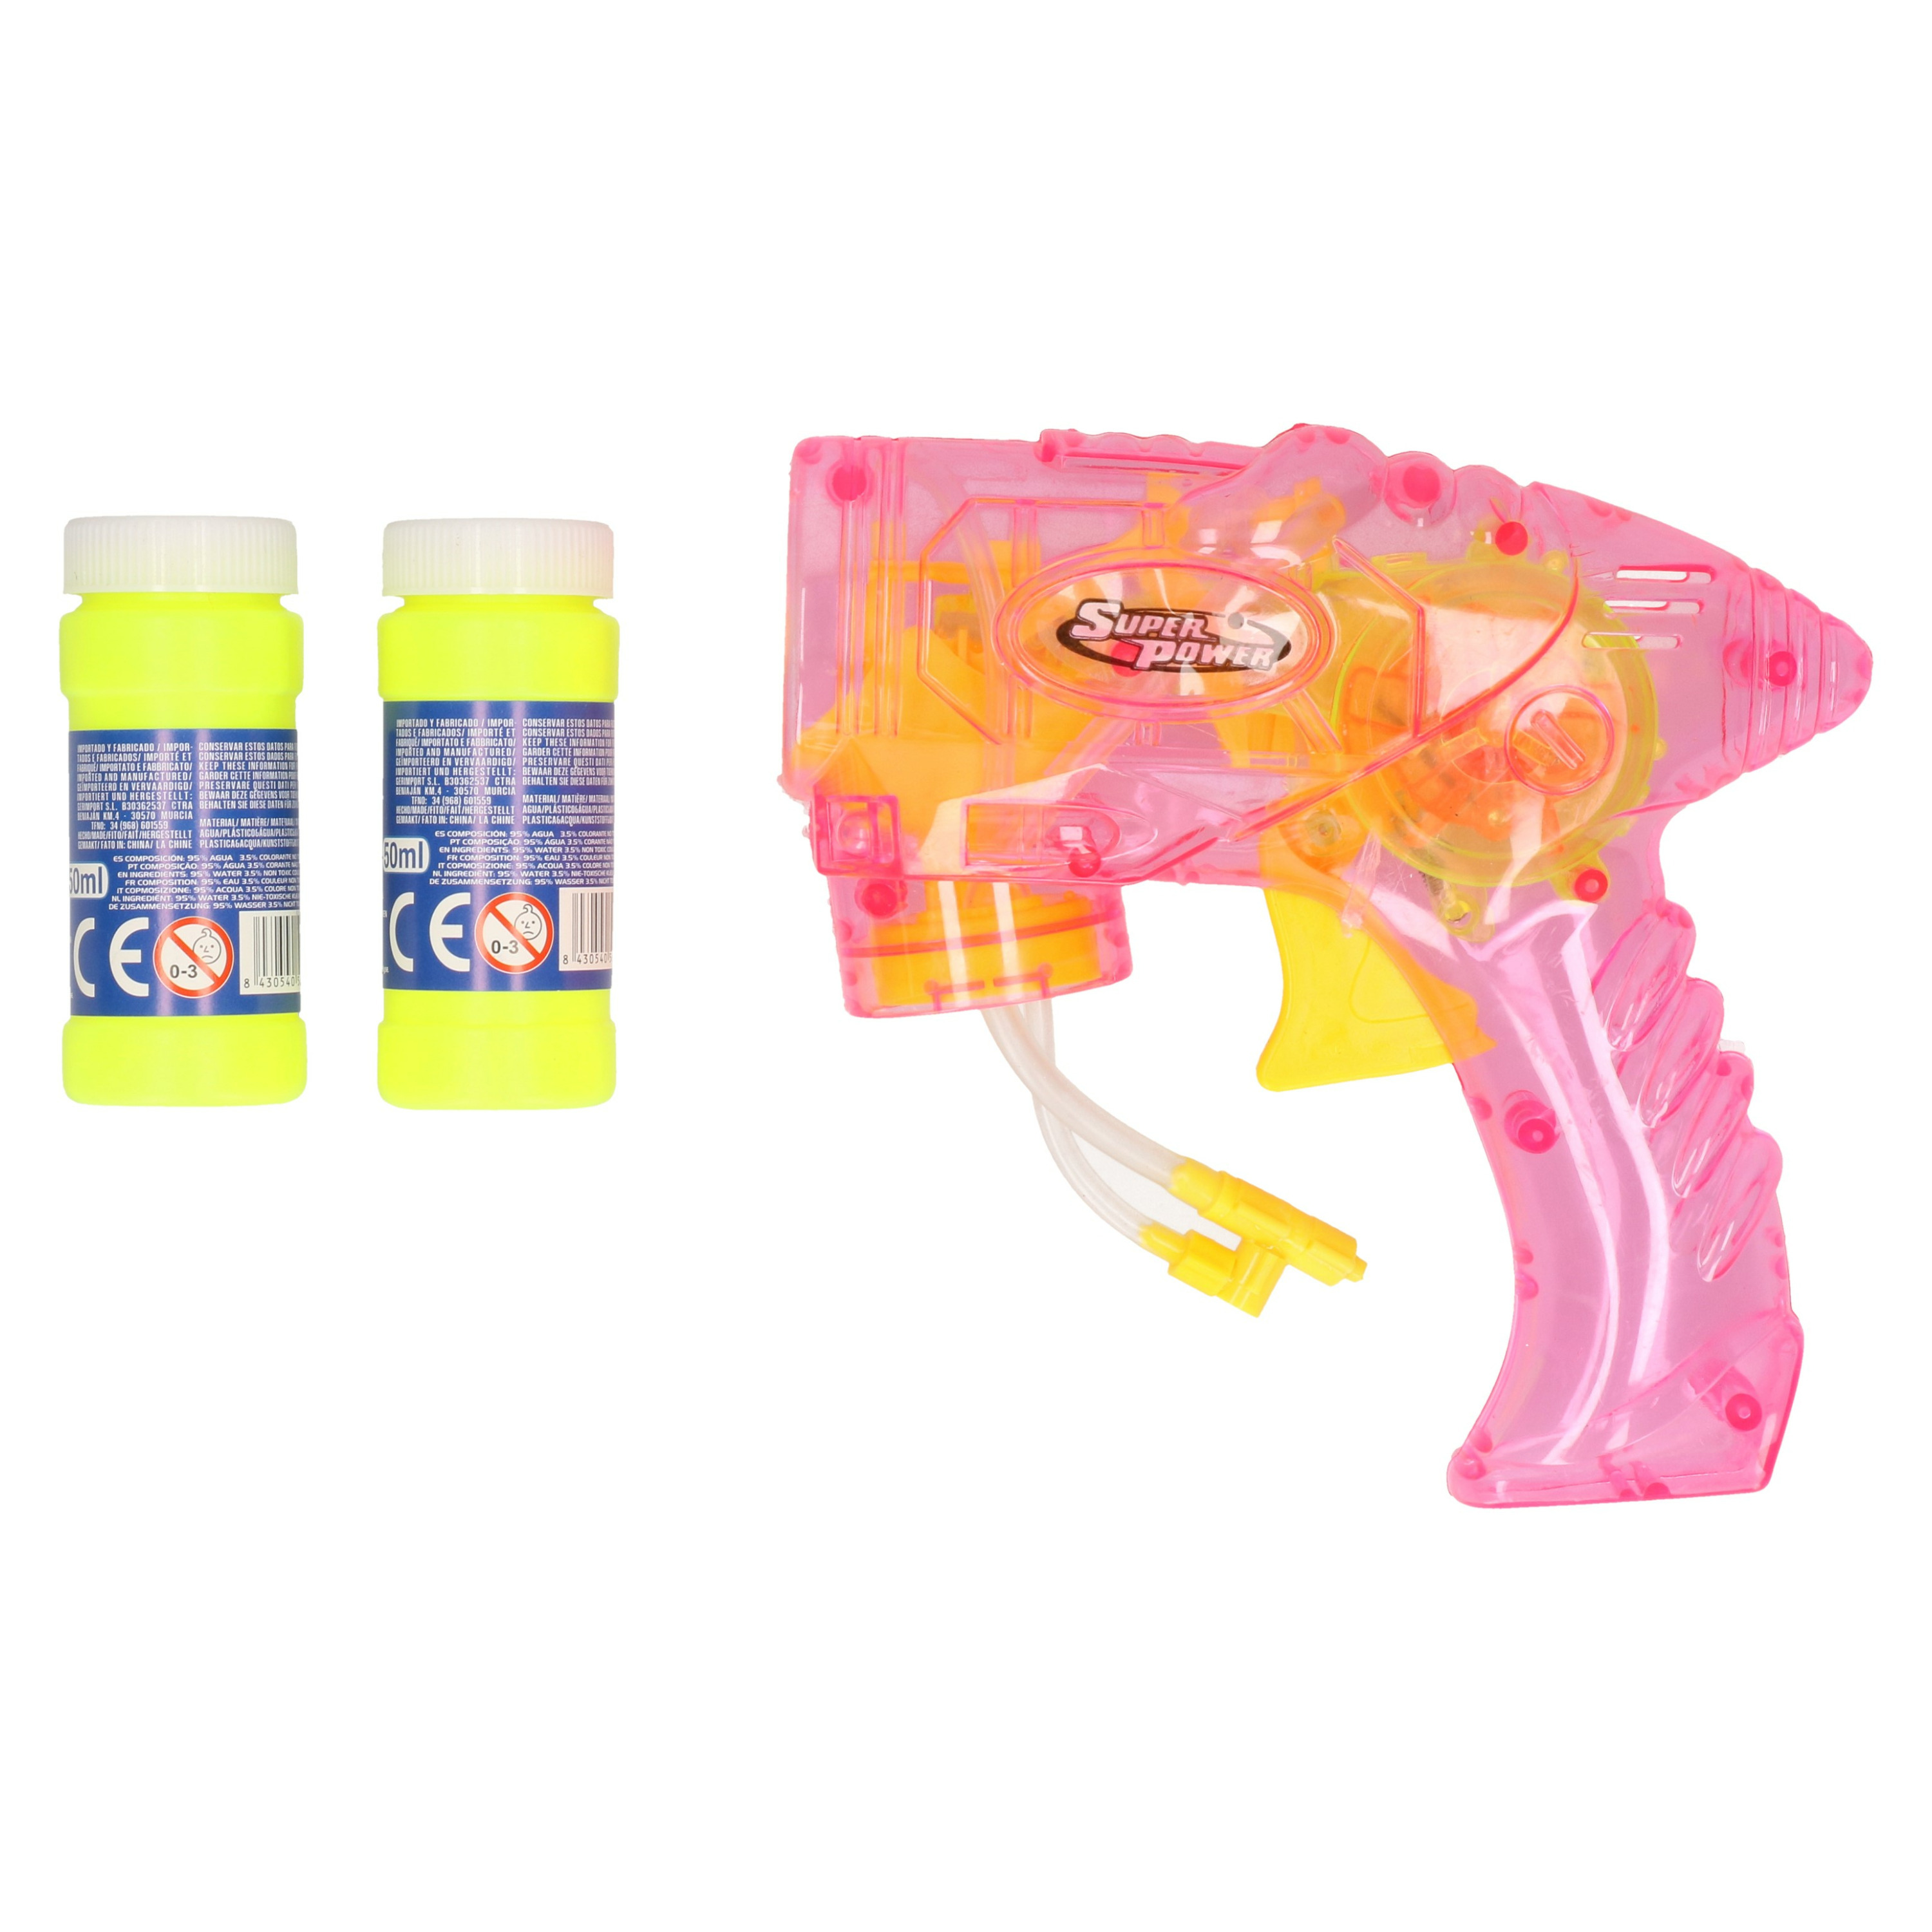 Bellenblaas speelgoed pistool met vullingen roze 15 cm plastic bellen blazen